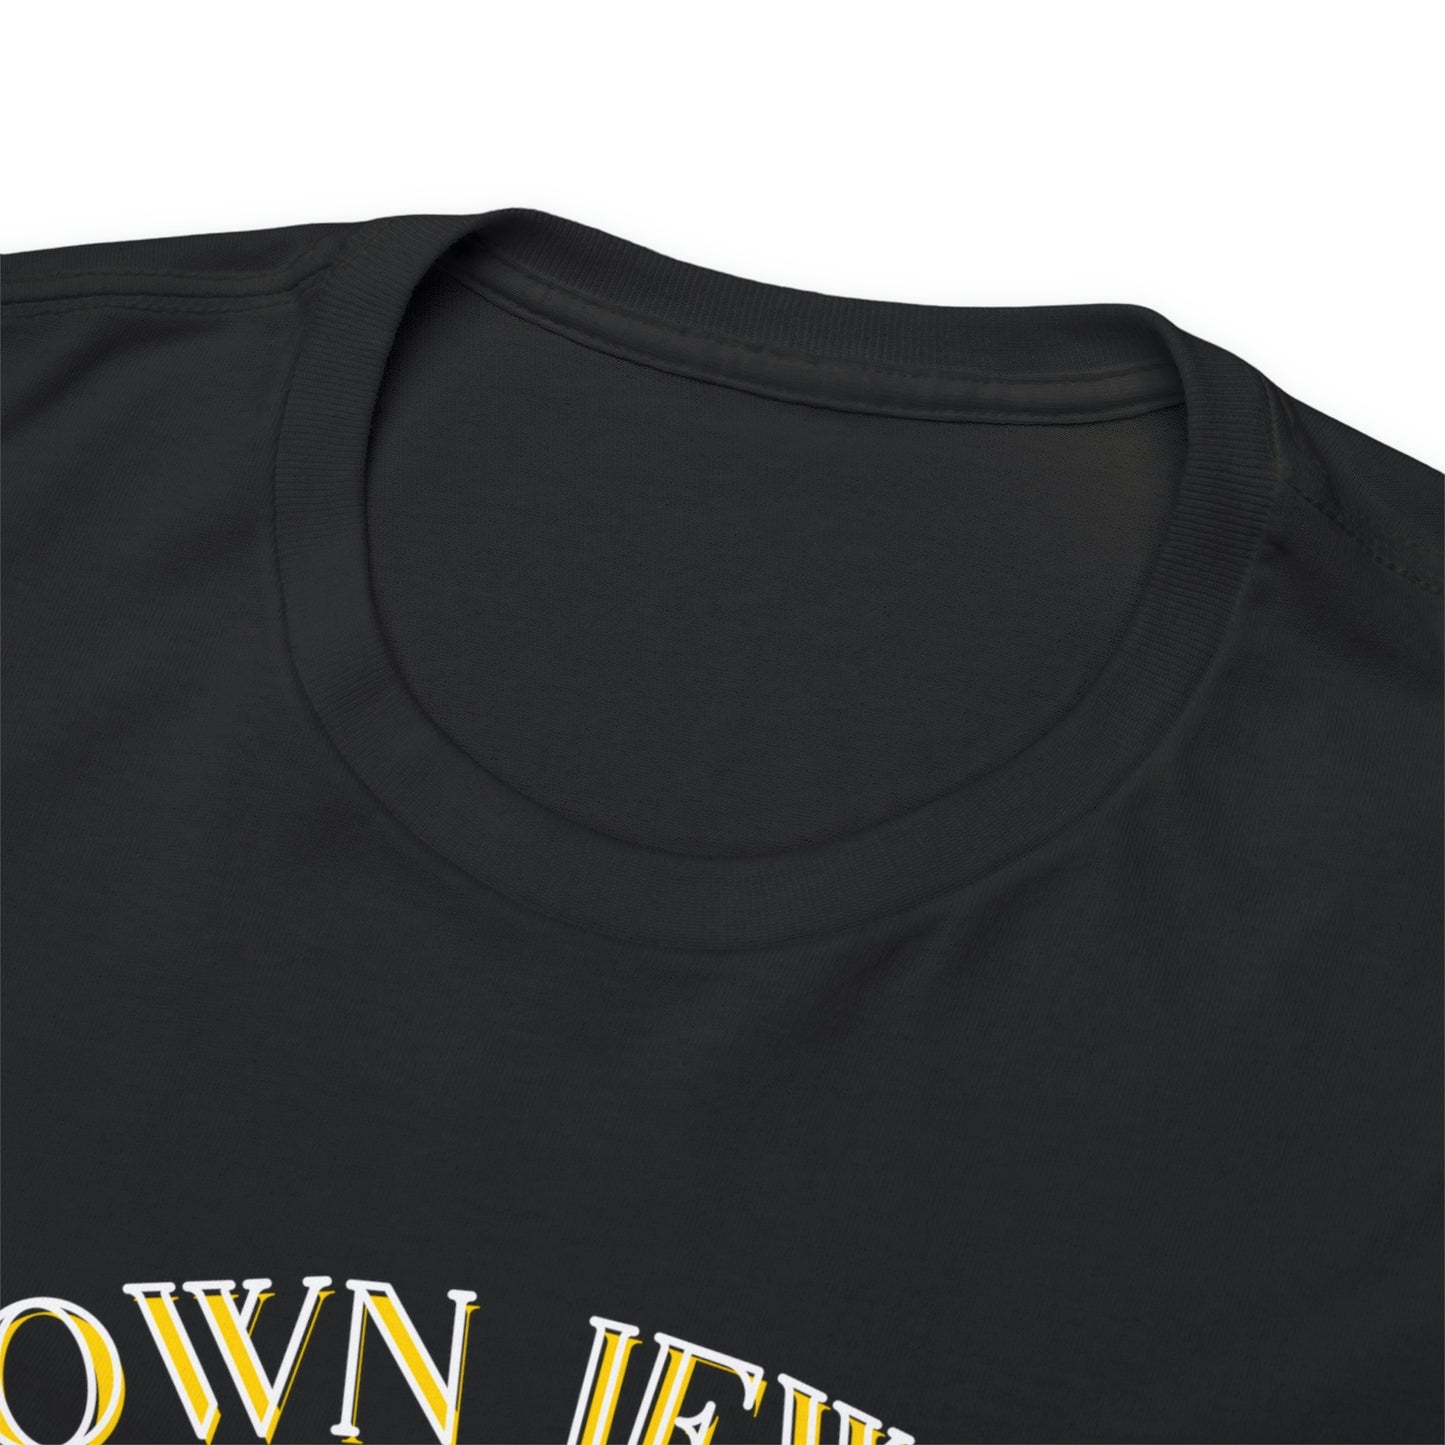 CROWN JEWELS League T-Shirt Black